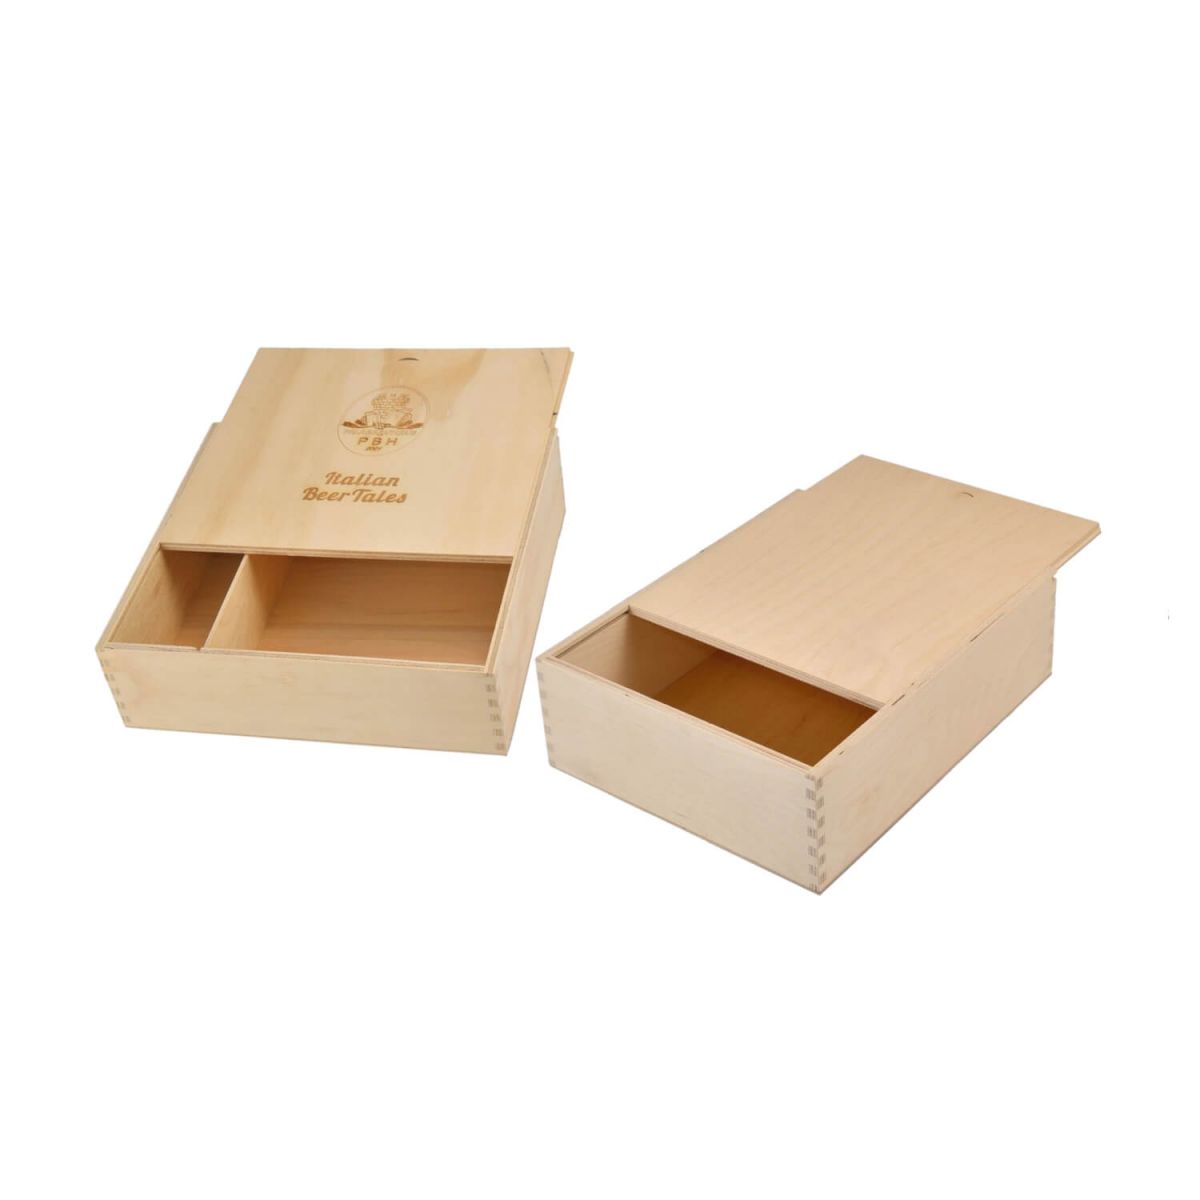 Casse in legno per confezione apertura a sfilo (ghigliottina) 